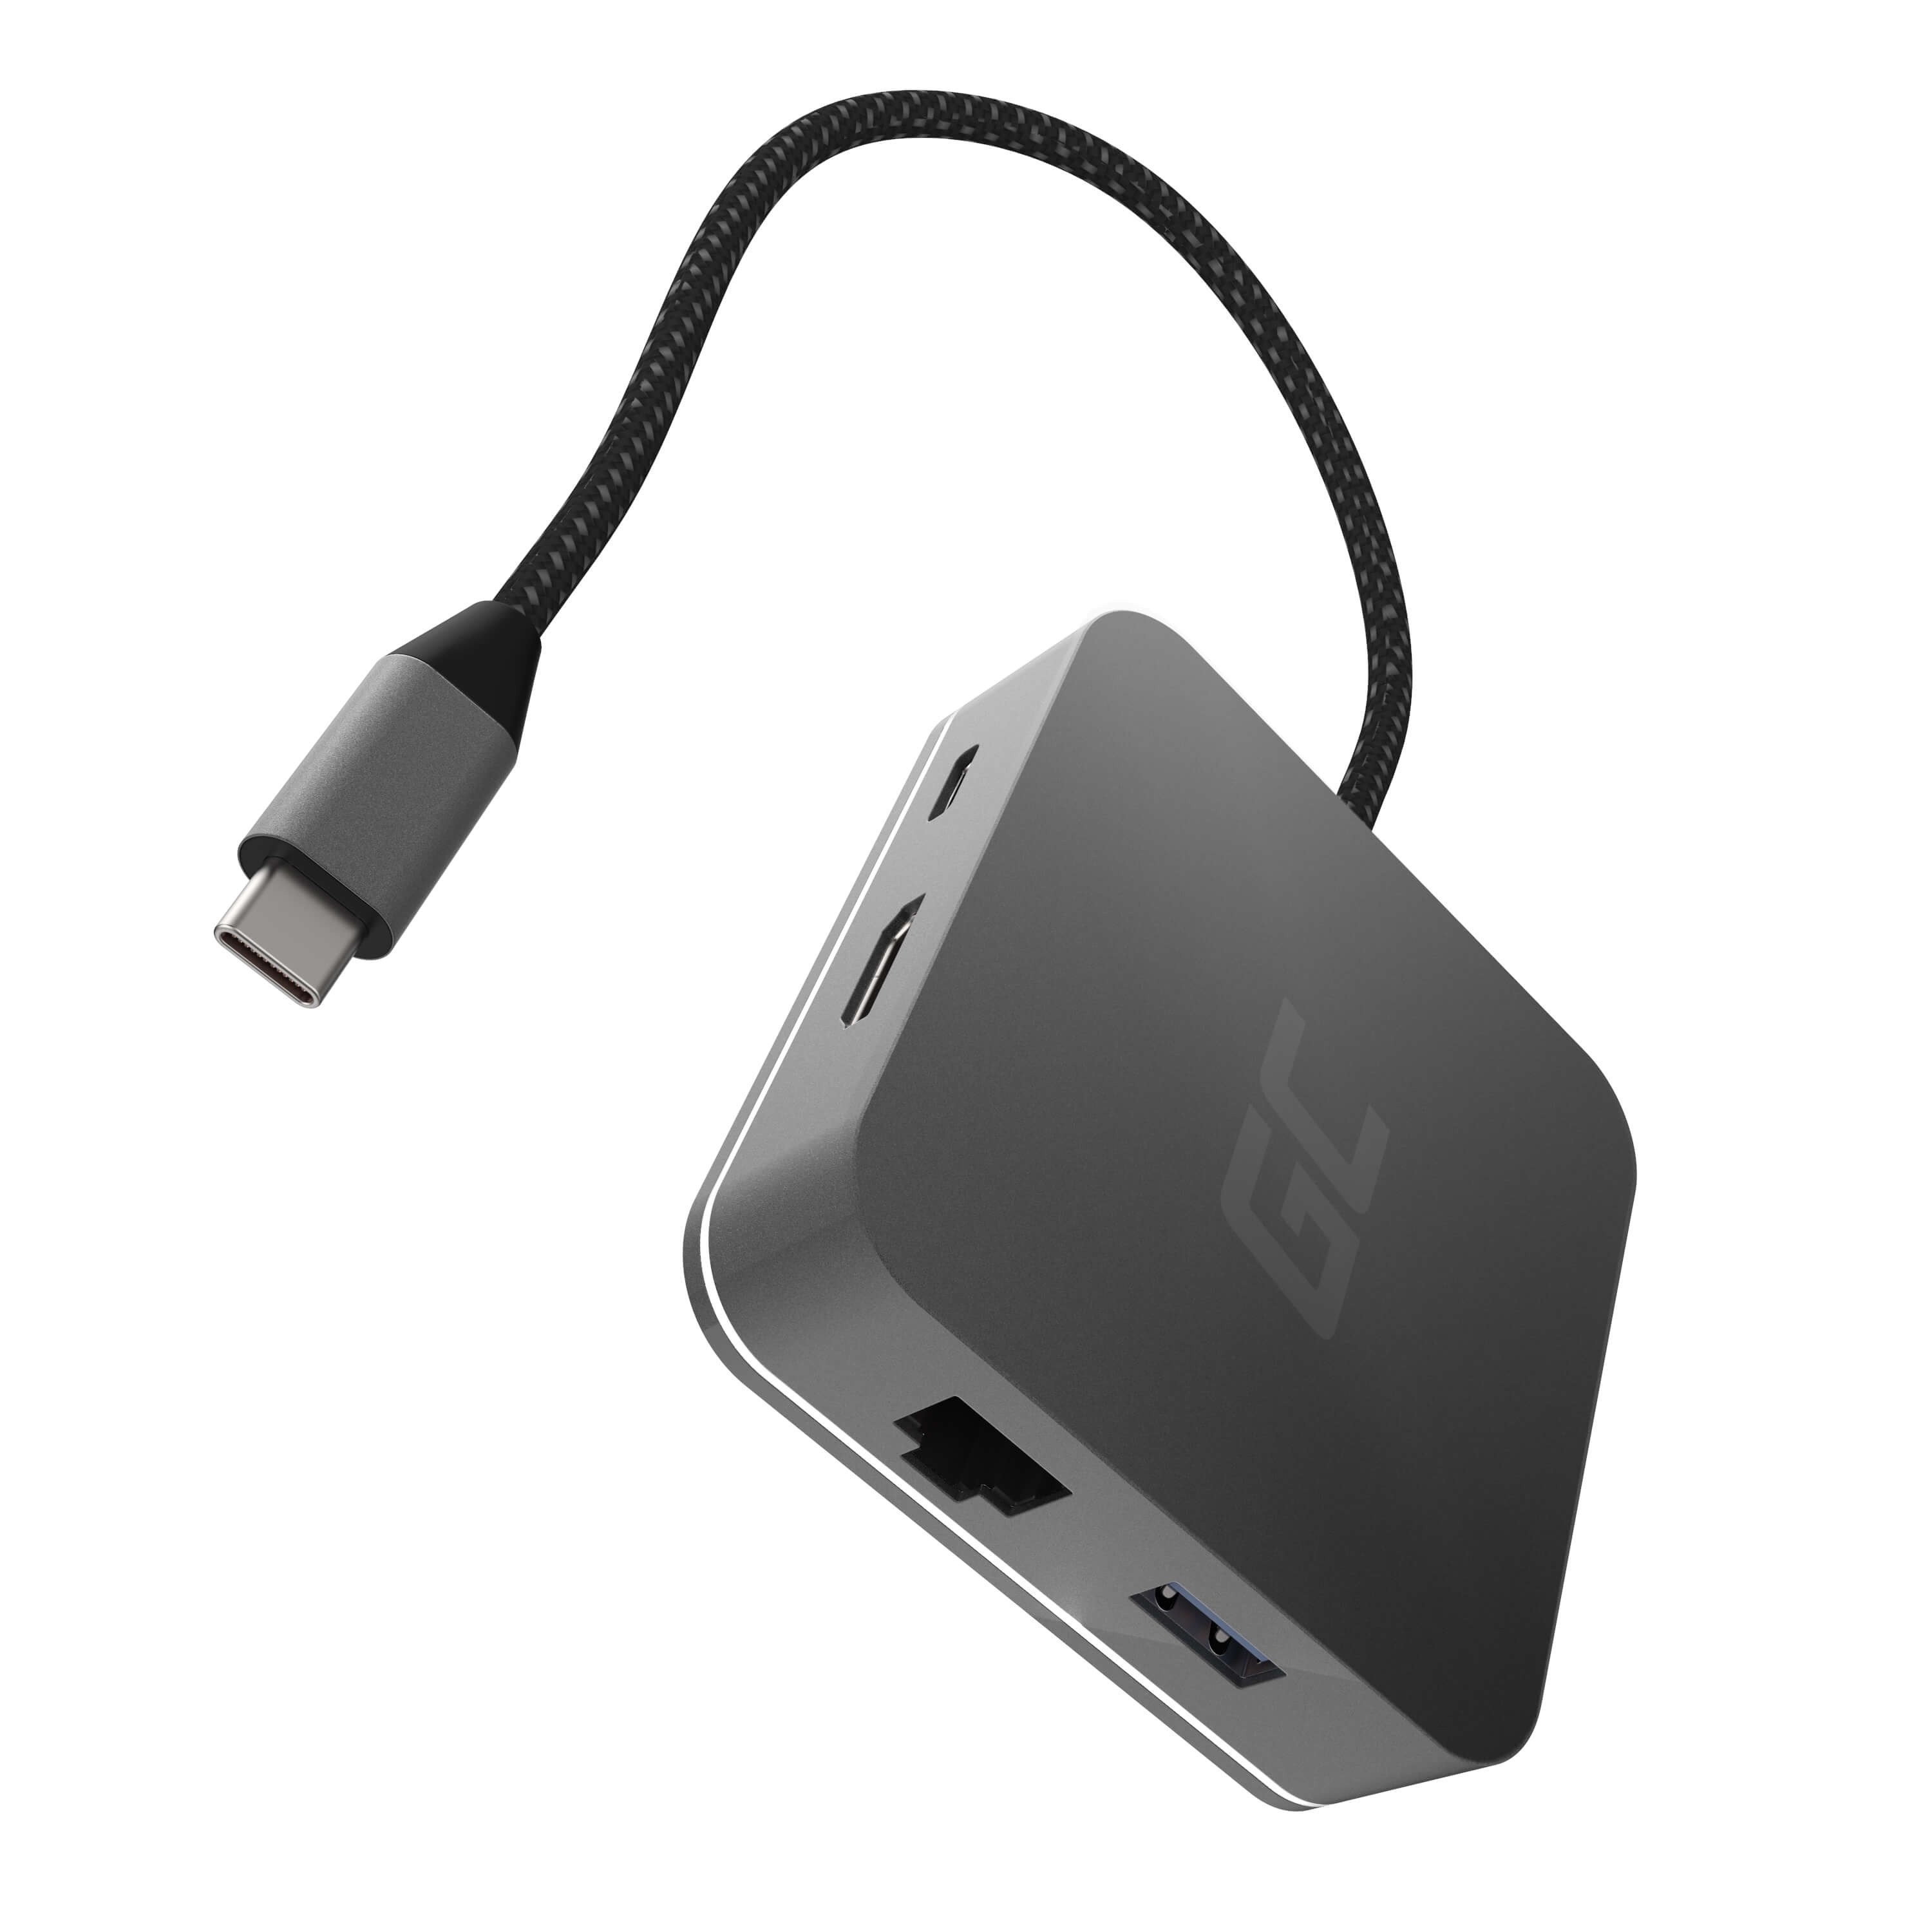 Dokovácí stanice HUB USB-C Green Cell 6in1 (USB 3.0 HDMI Ethernet USB-C) pro Apple MacBook, Dell XPS, Asus ZenBook a ostatní